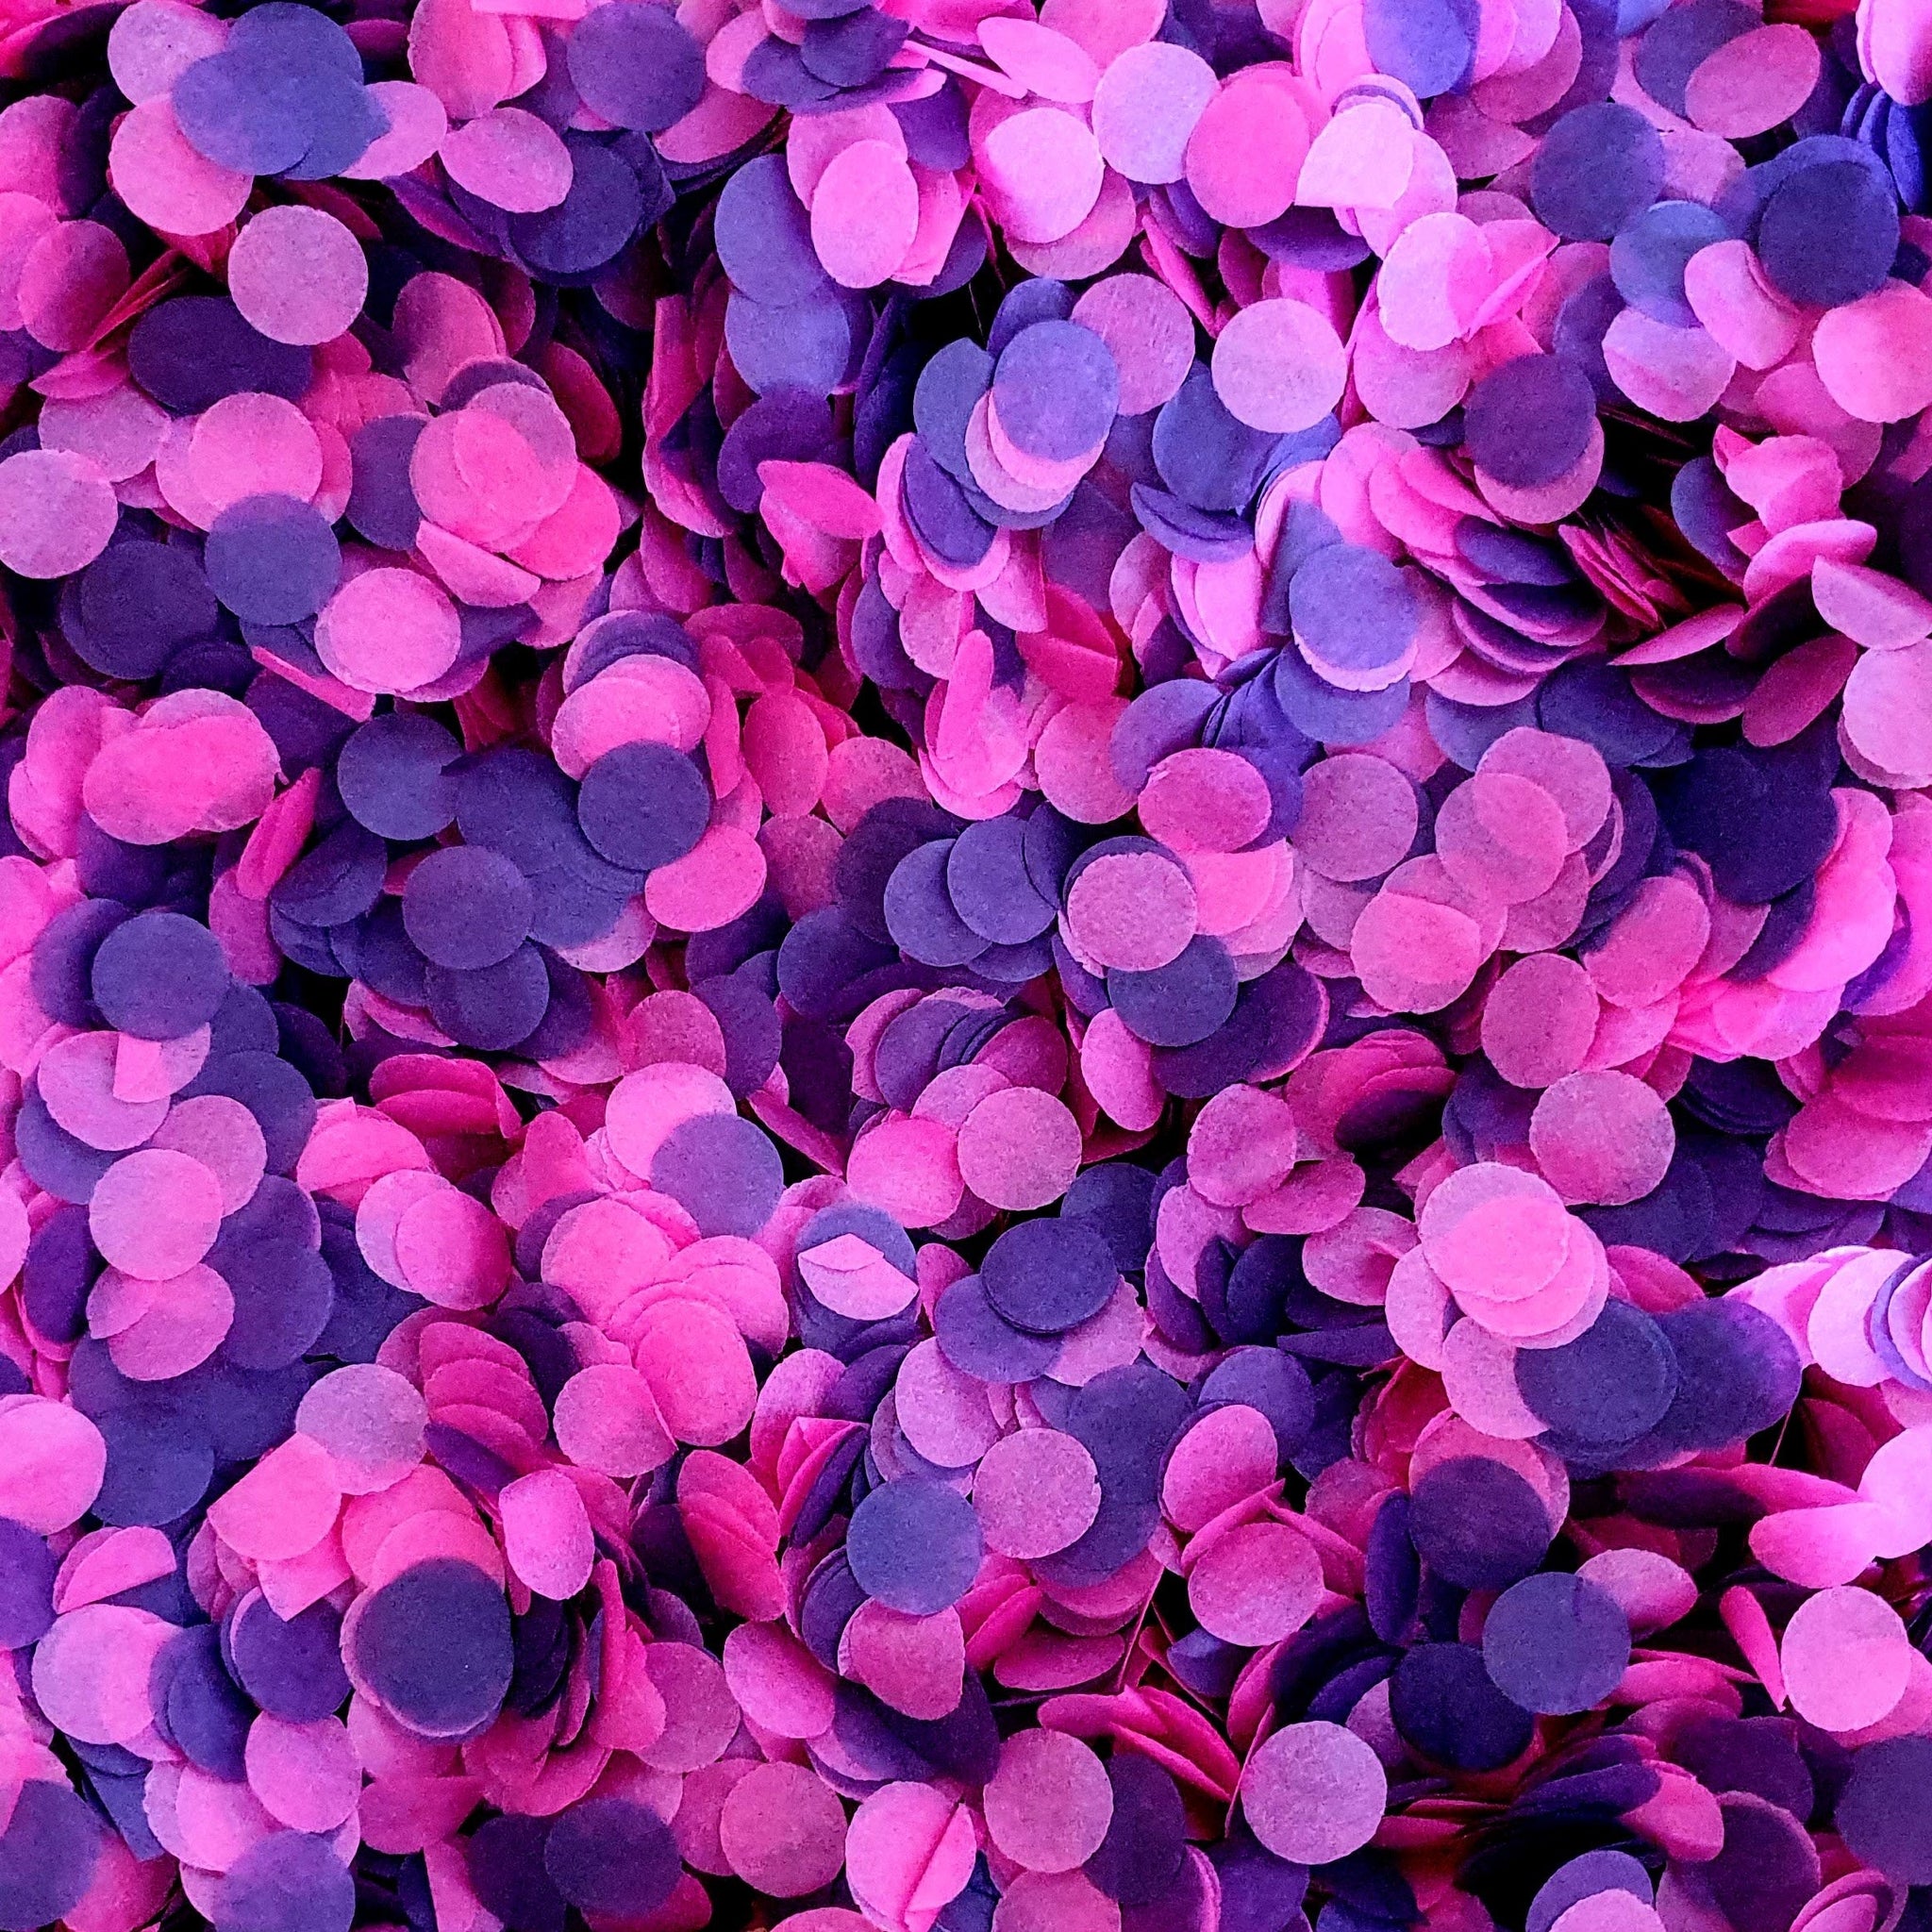 Pink & Purple Biodegradable Confetti - Proper Confetti